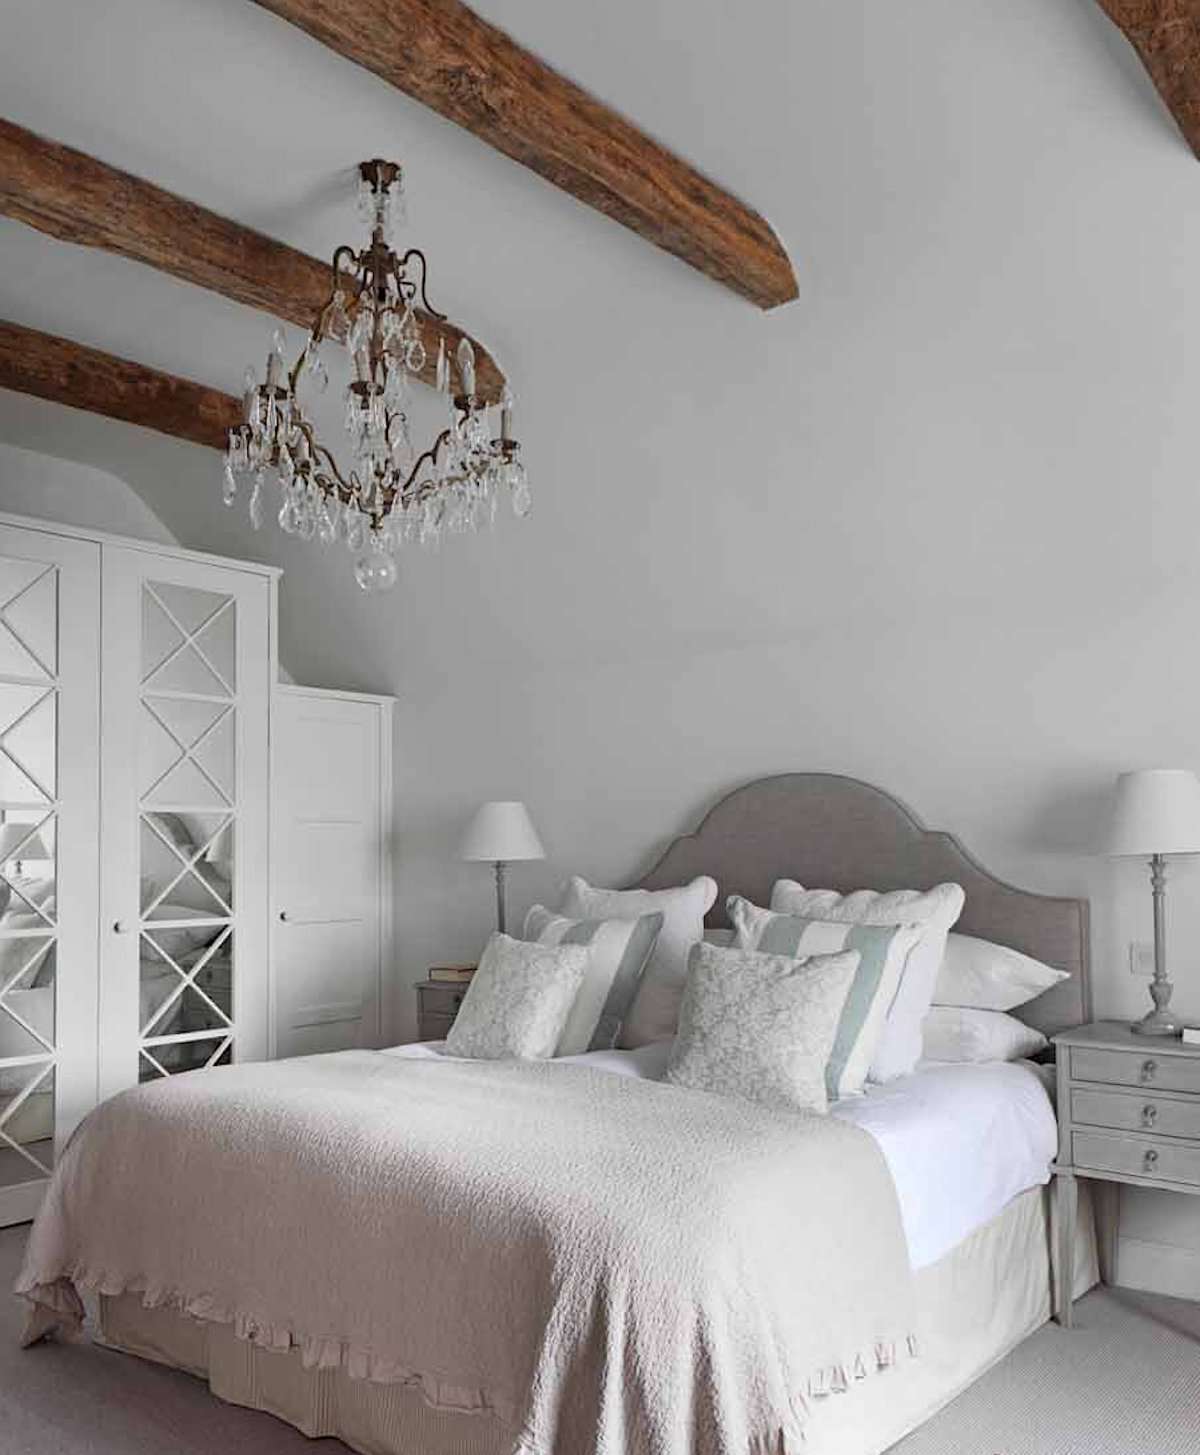 quarto com paredes brancas, cores neutras com leves toques de azul, vigas de madeira expostas no teto, lustre ornamentado, estilo toscano